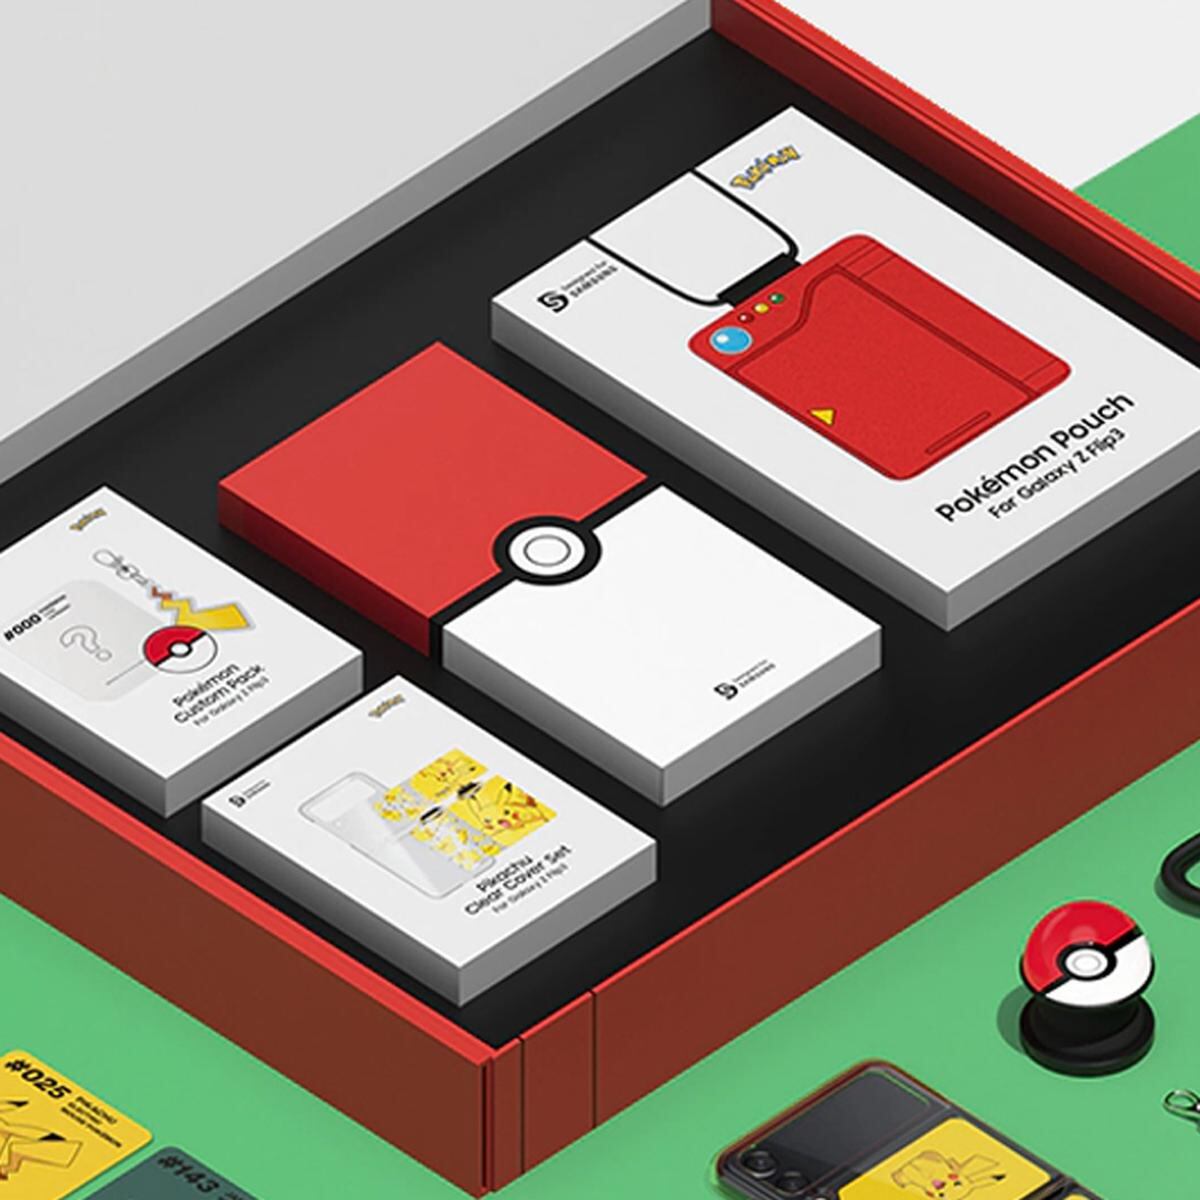 Samsung anunció una edición especial de su plegable para los amantes de Pokémon